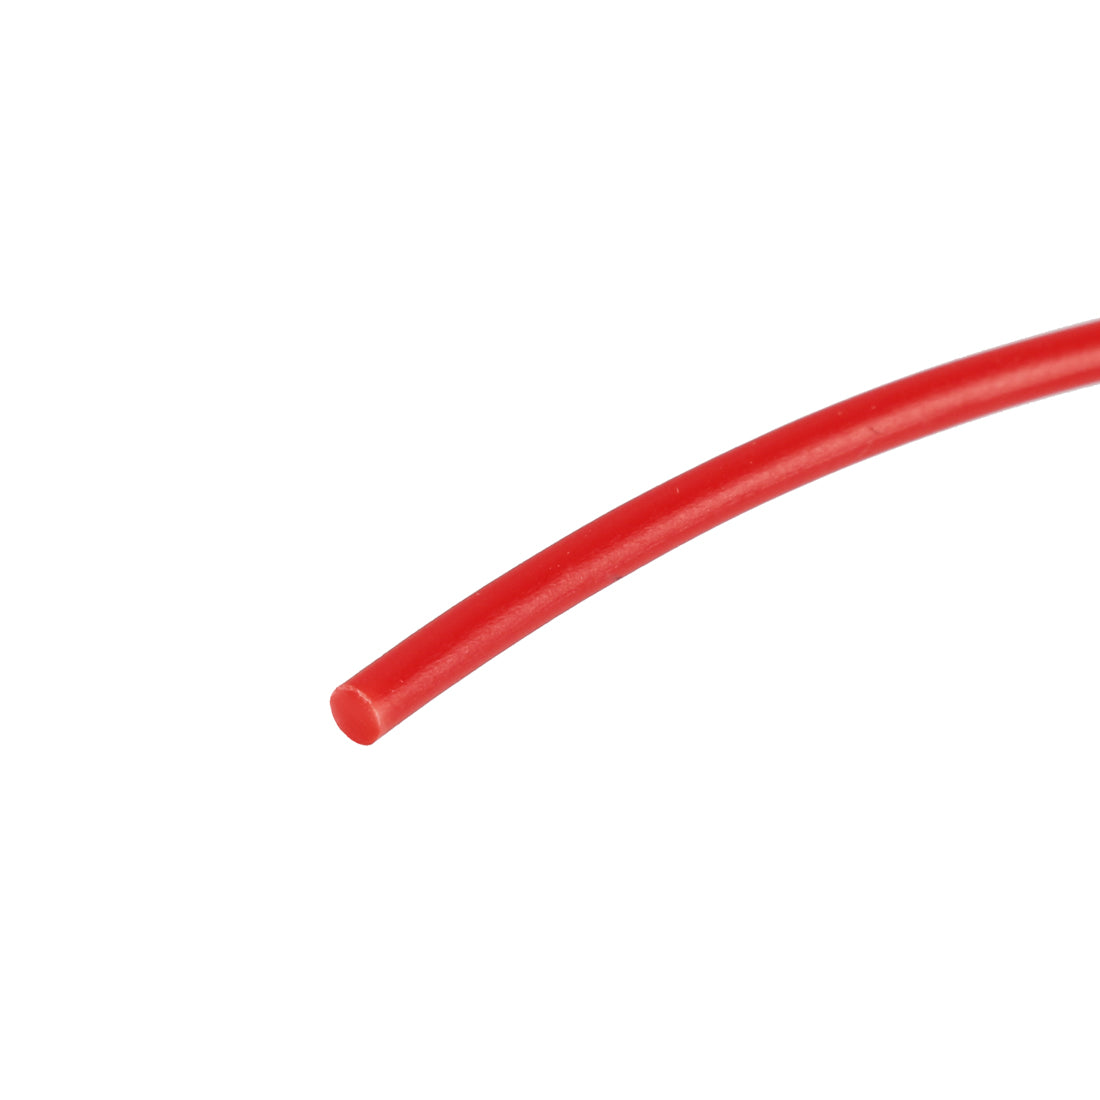 uxcell Uxcell 5 Meter/16 Ft ABS 3D Pen/3D Printer Filament, 1.75 mm Red